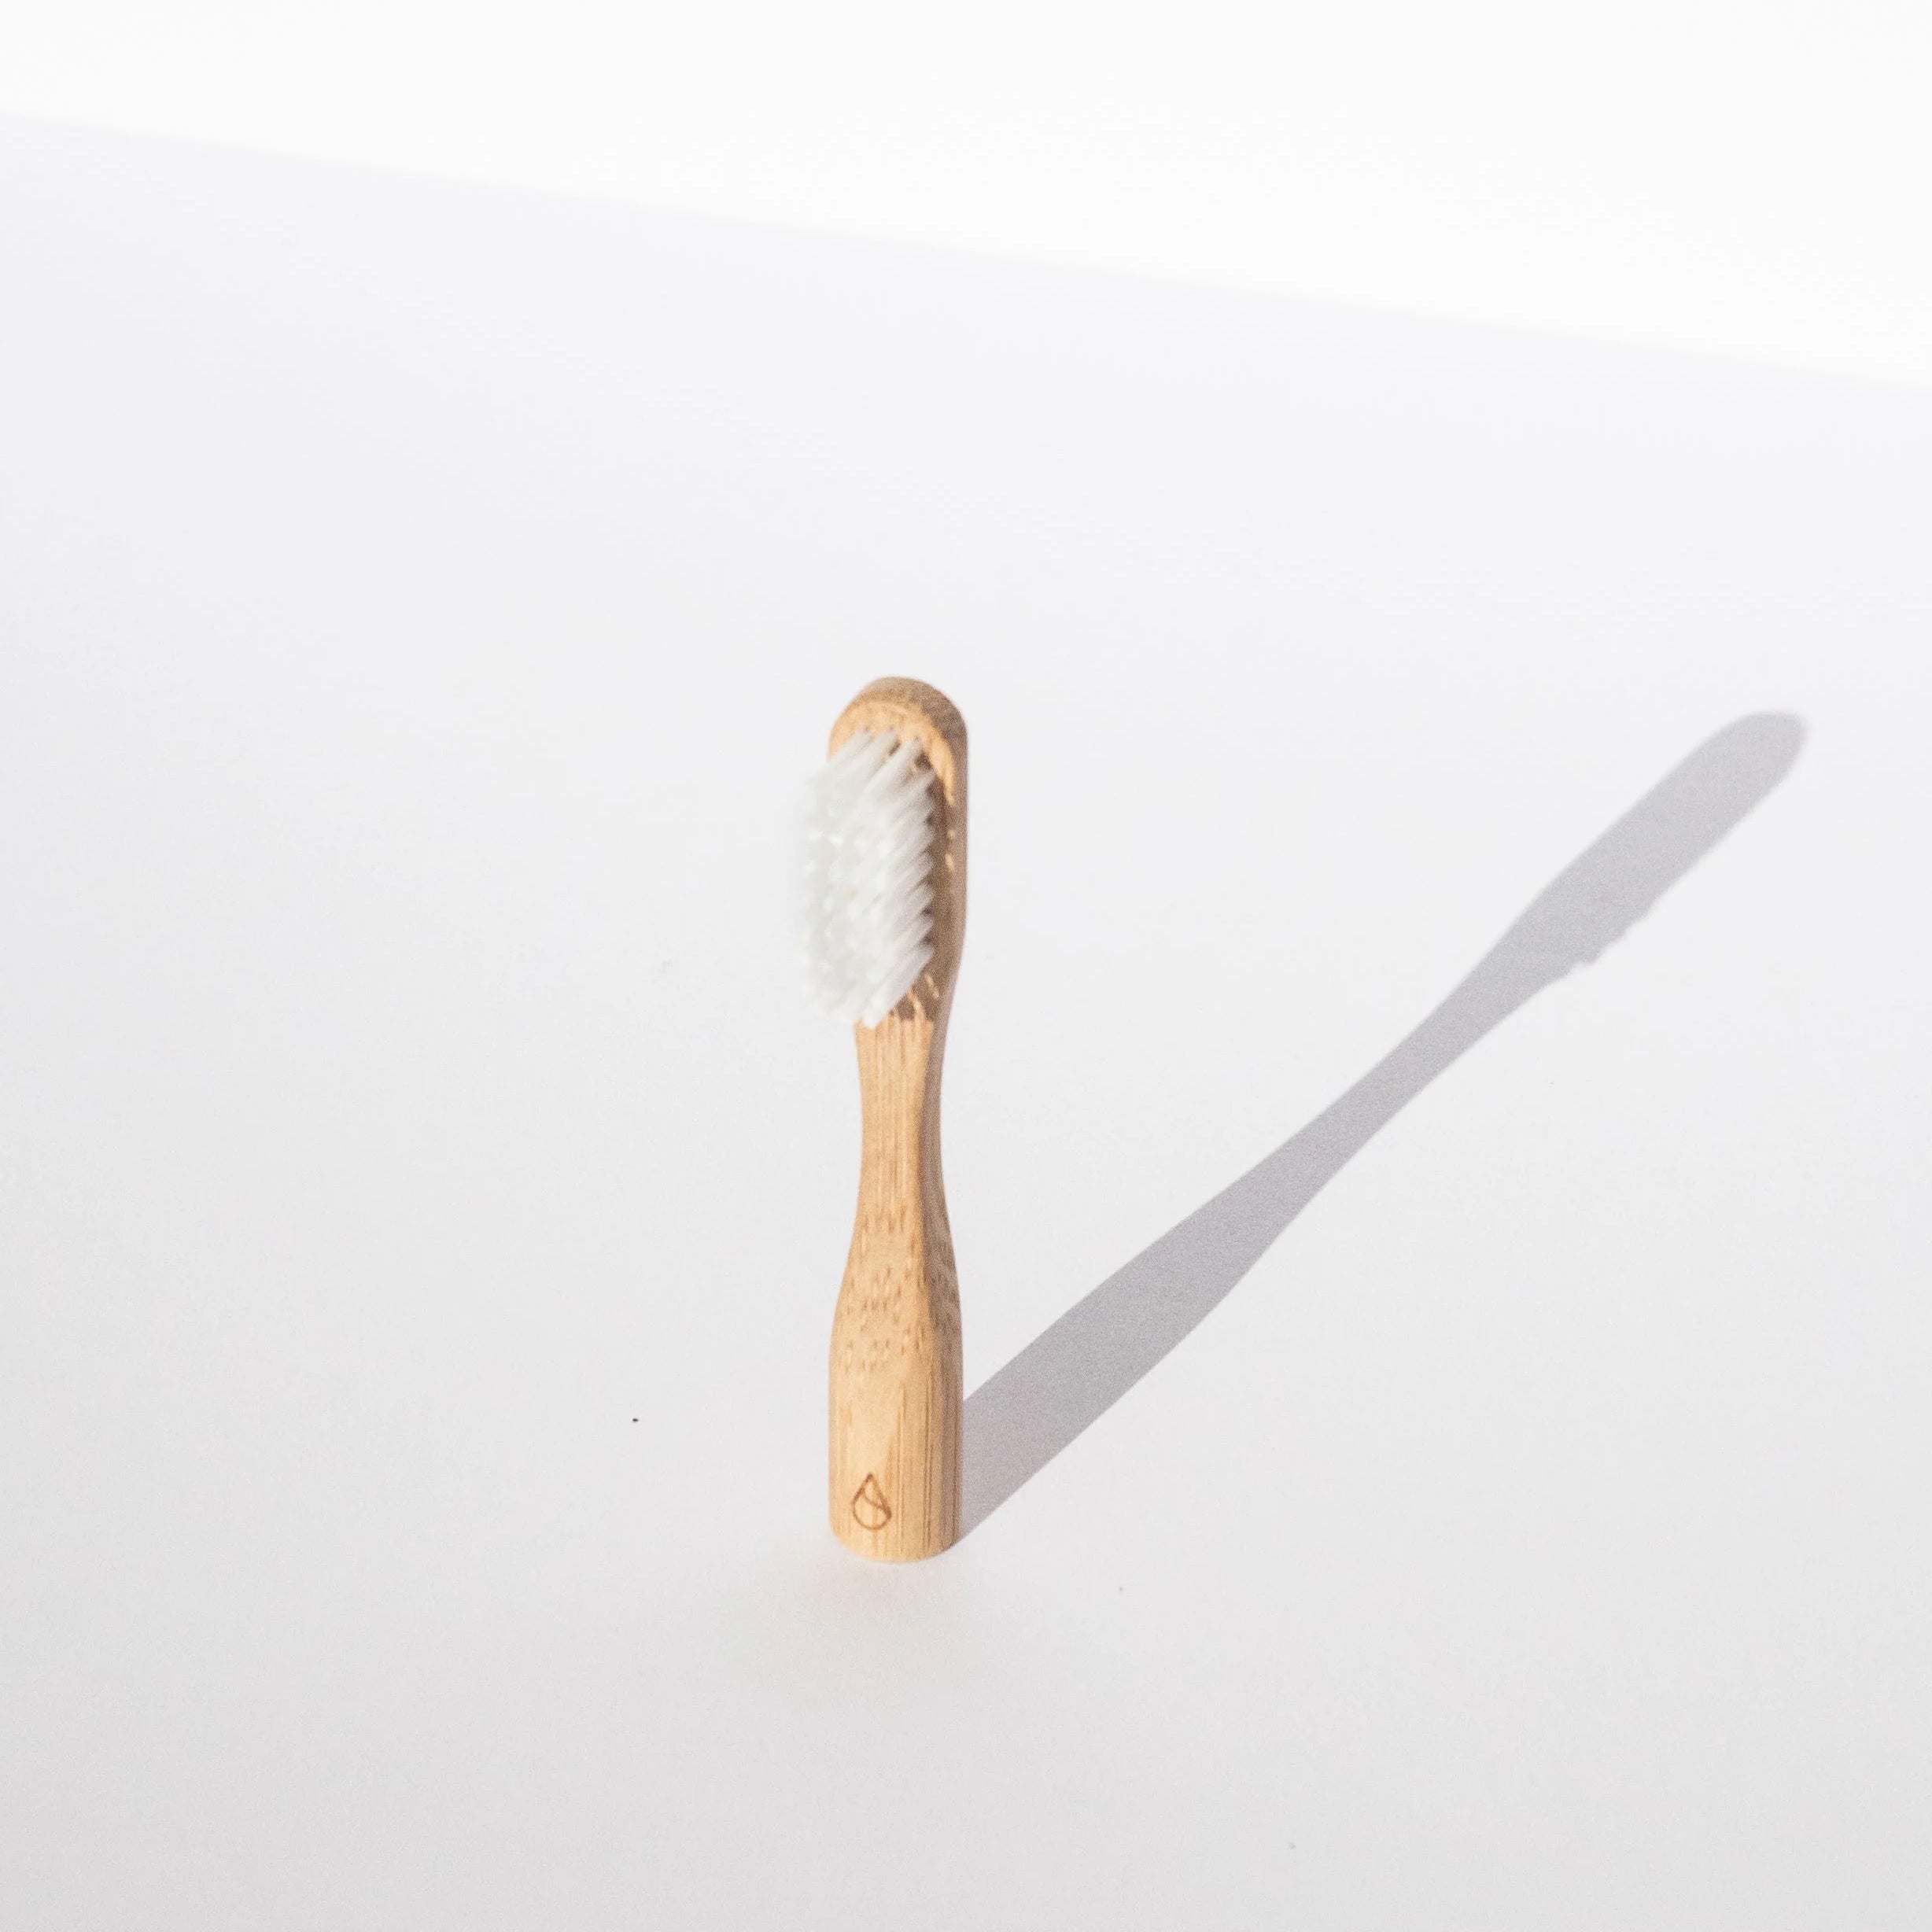 Asuvi Bamboo Toothbrush - S 環保竹牙刷 - 軟毛